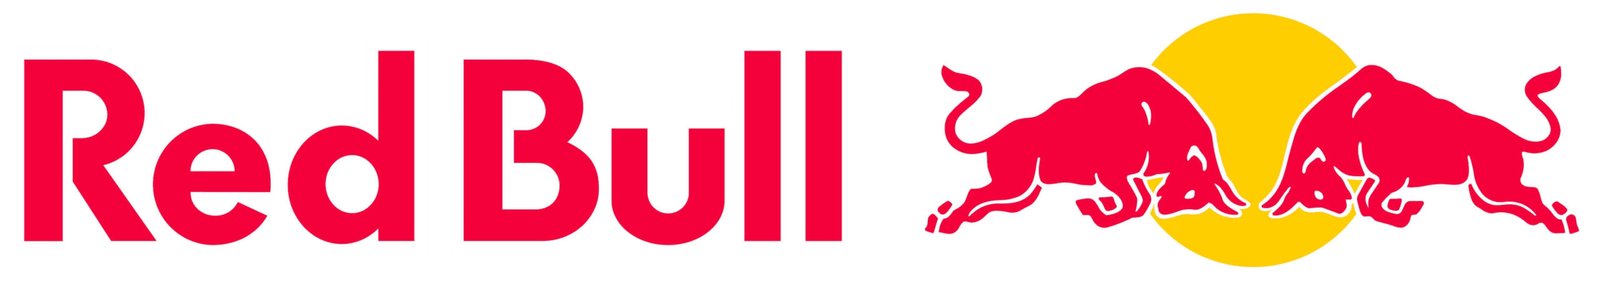 Logotipo de Red Bull - Significado, historia y evolución